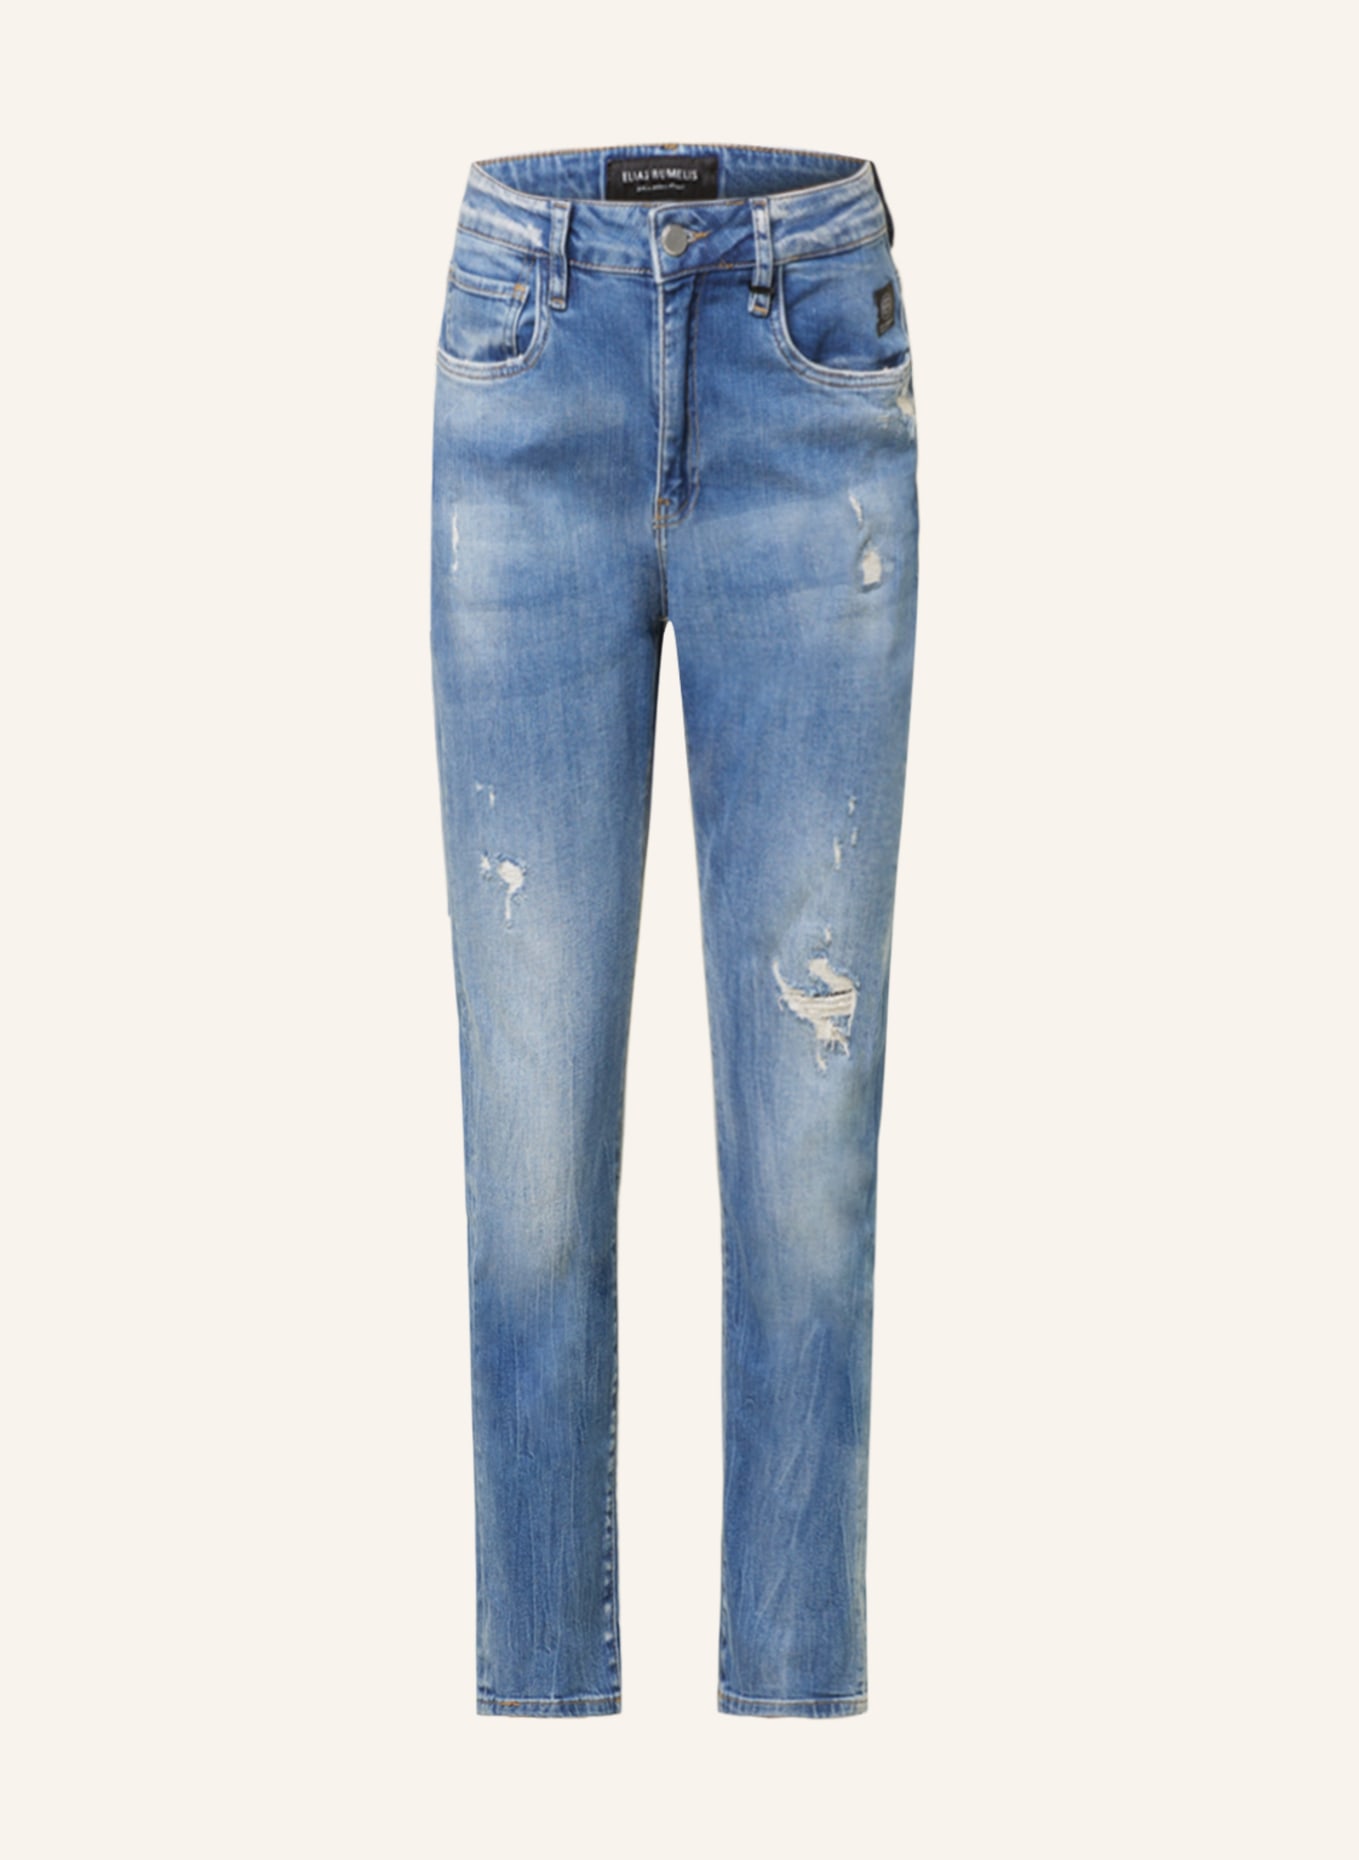 ELIAS RUMELIS Boyfriend Jeans LEONA, Farbe: 681 Stone blue (Bild 1)